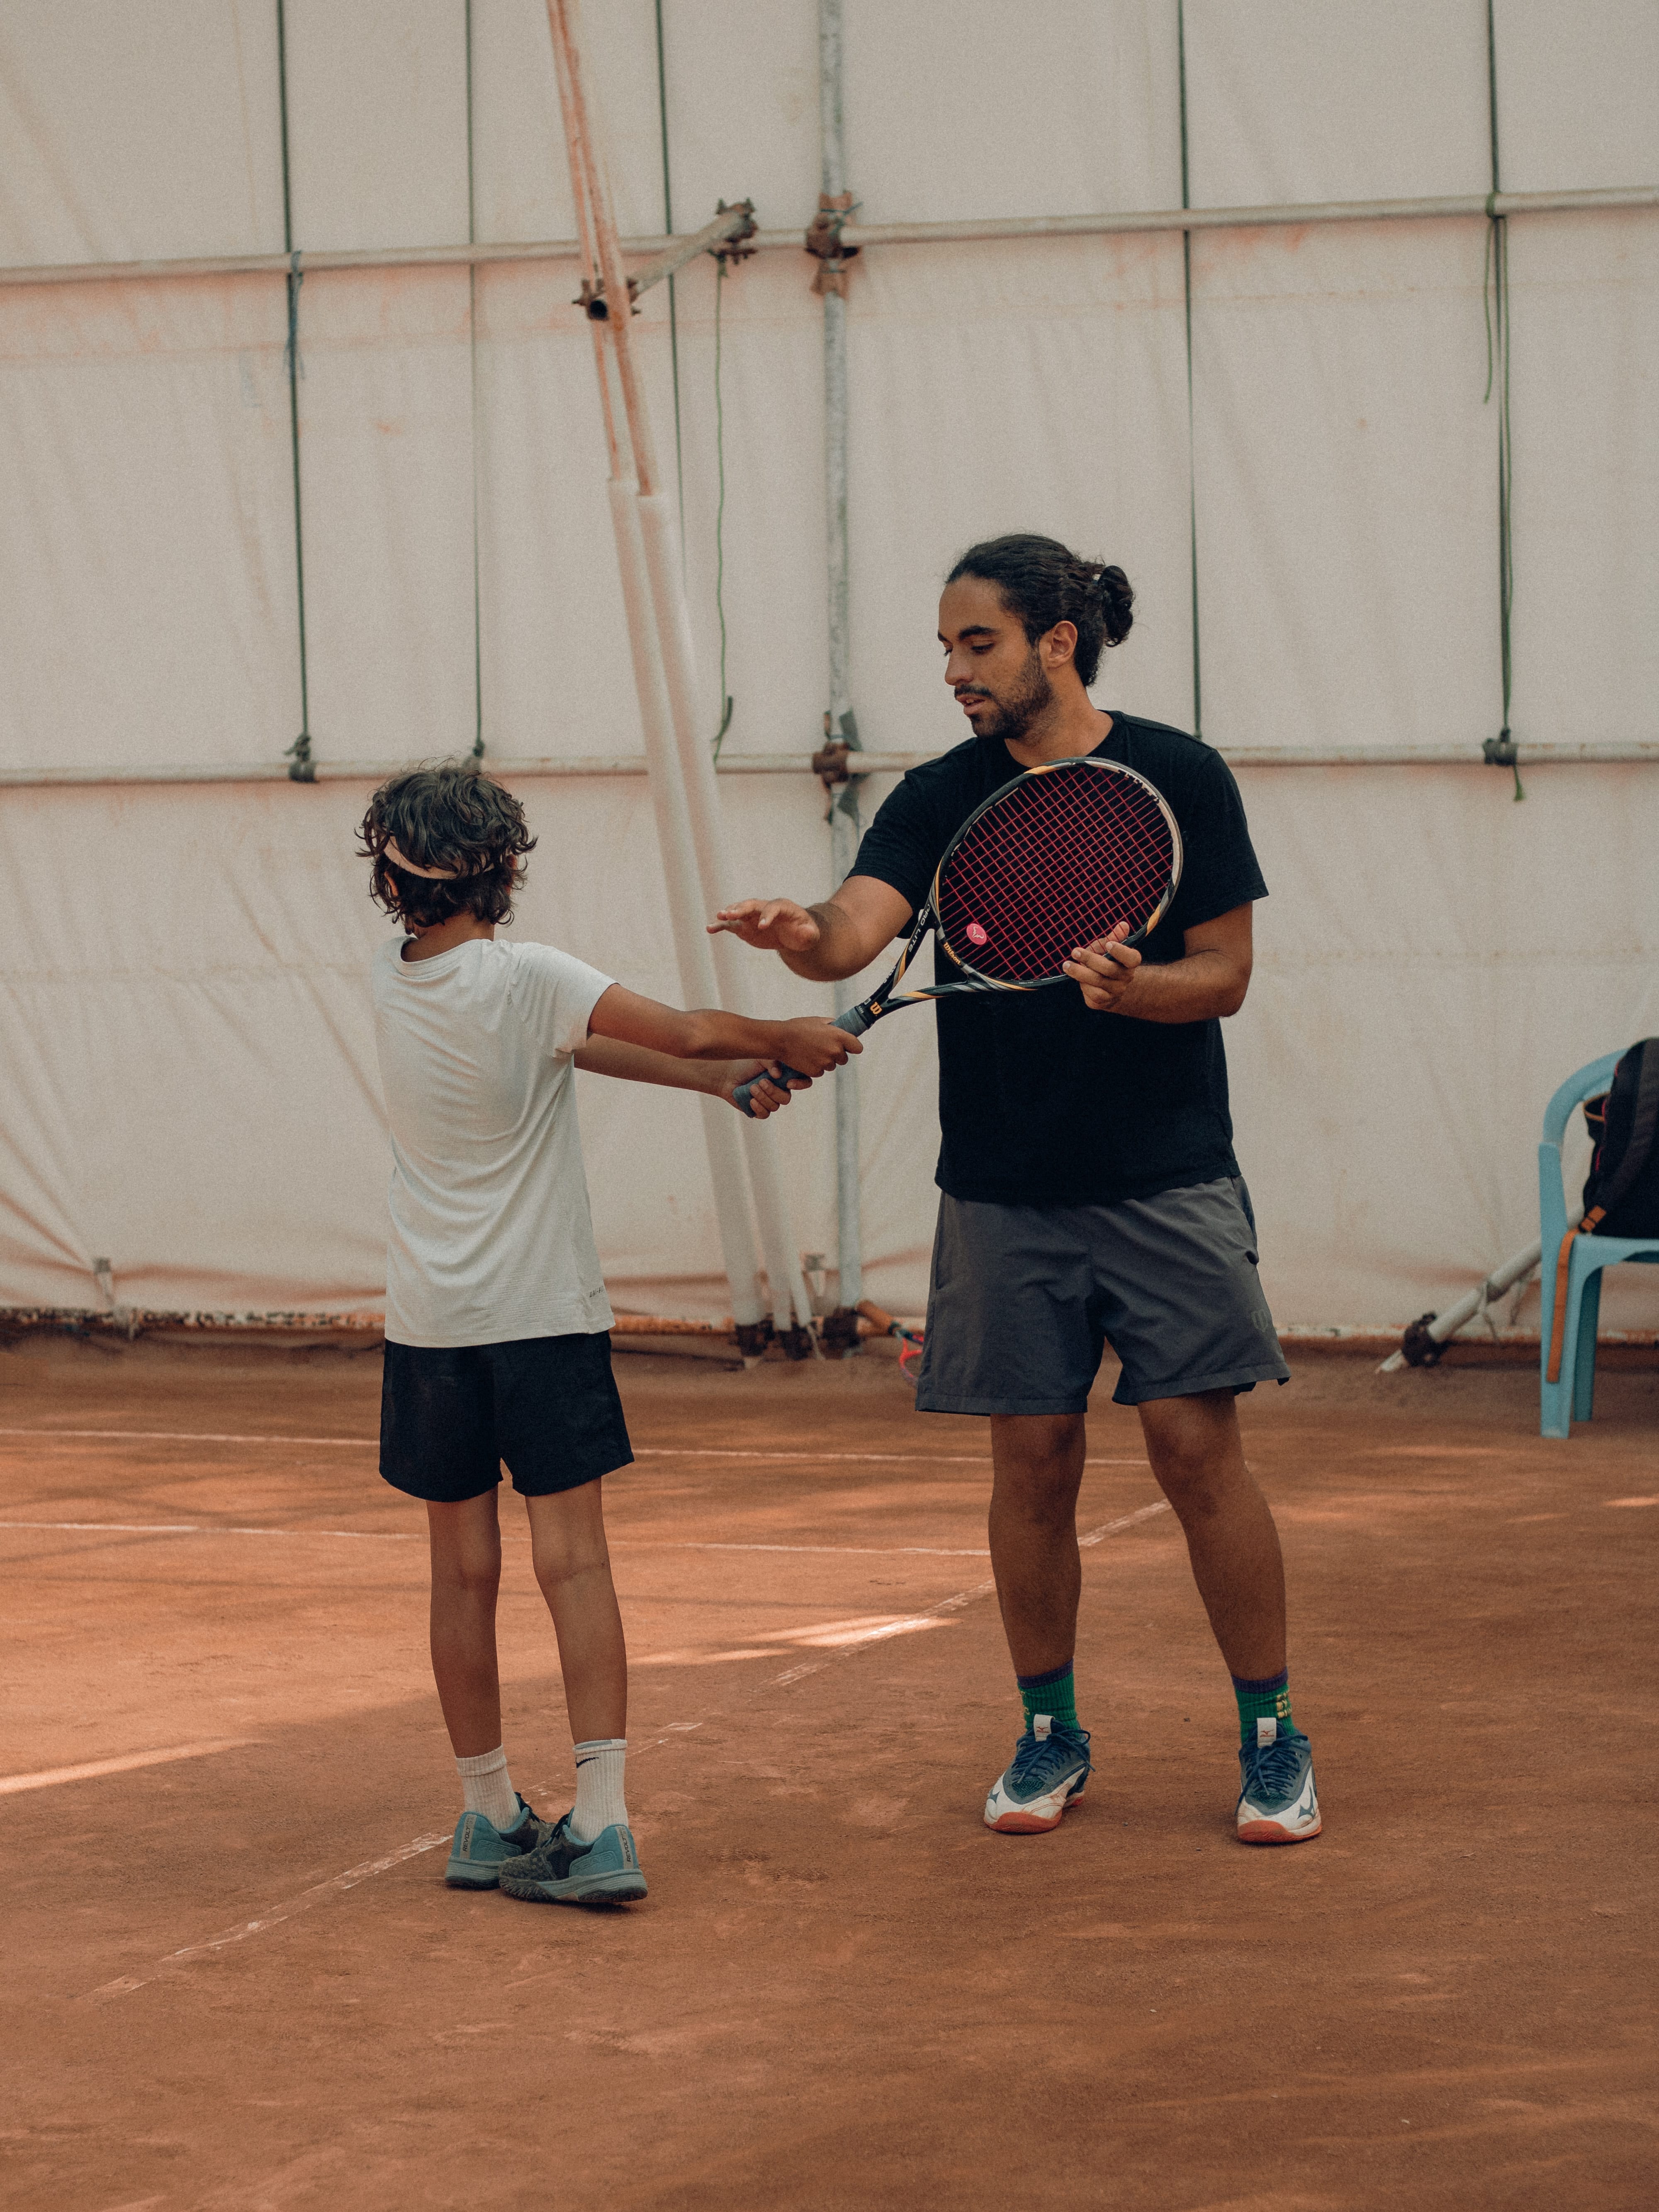 男性のテニスコーチが児童にテニスを指導する様子